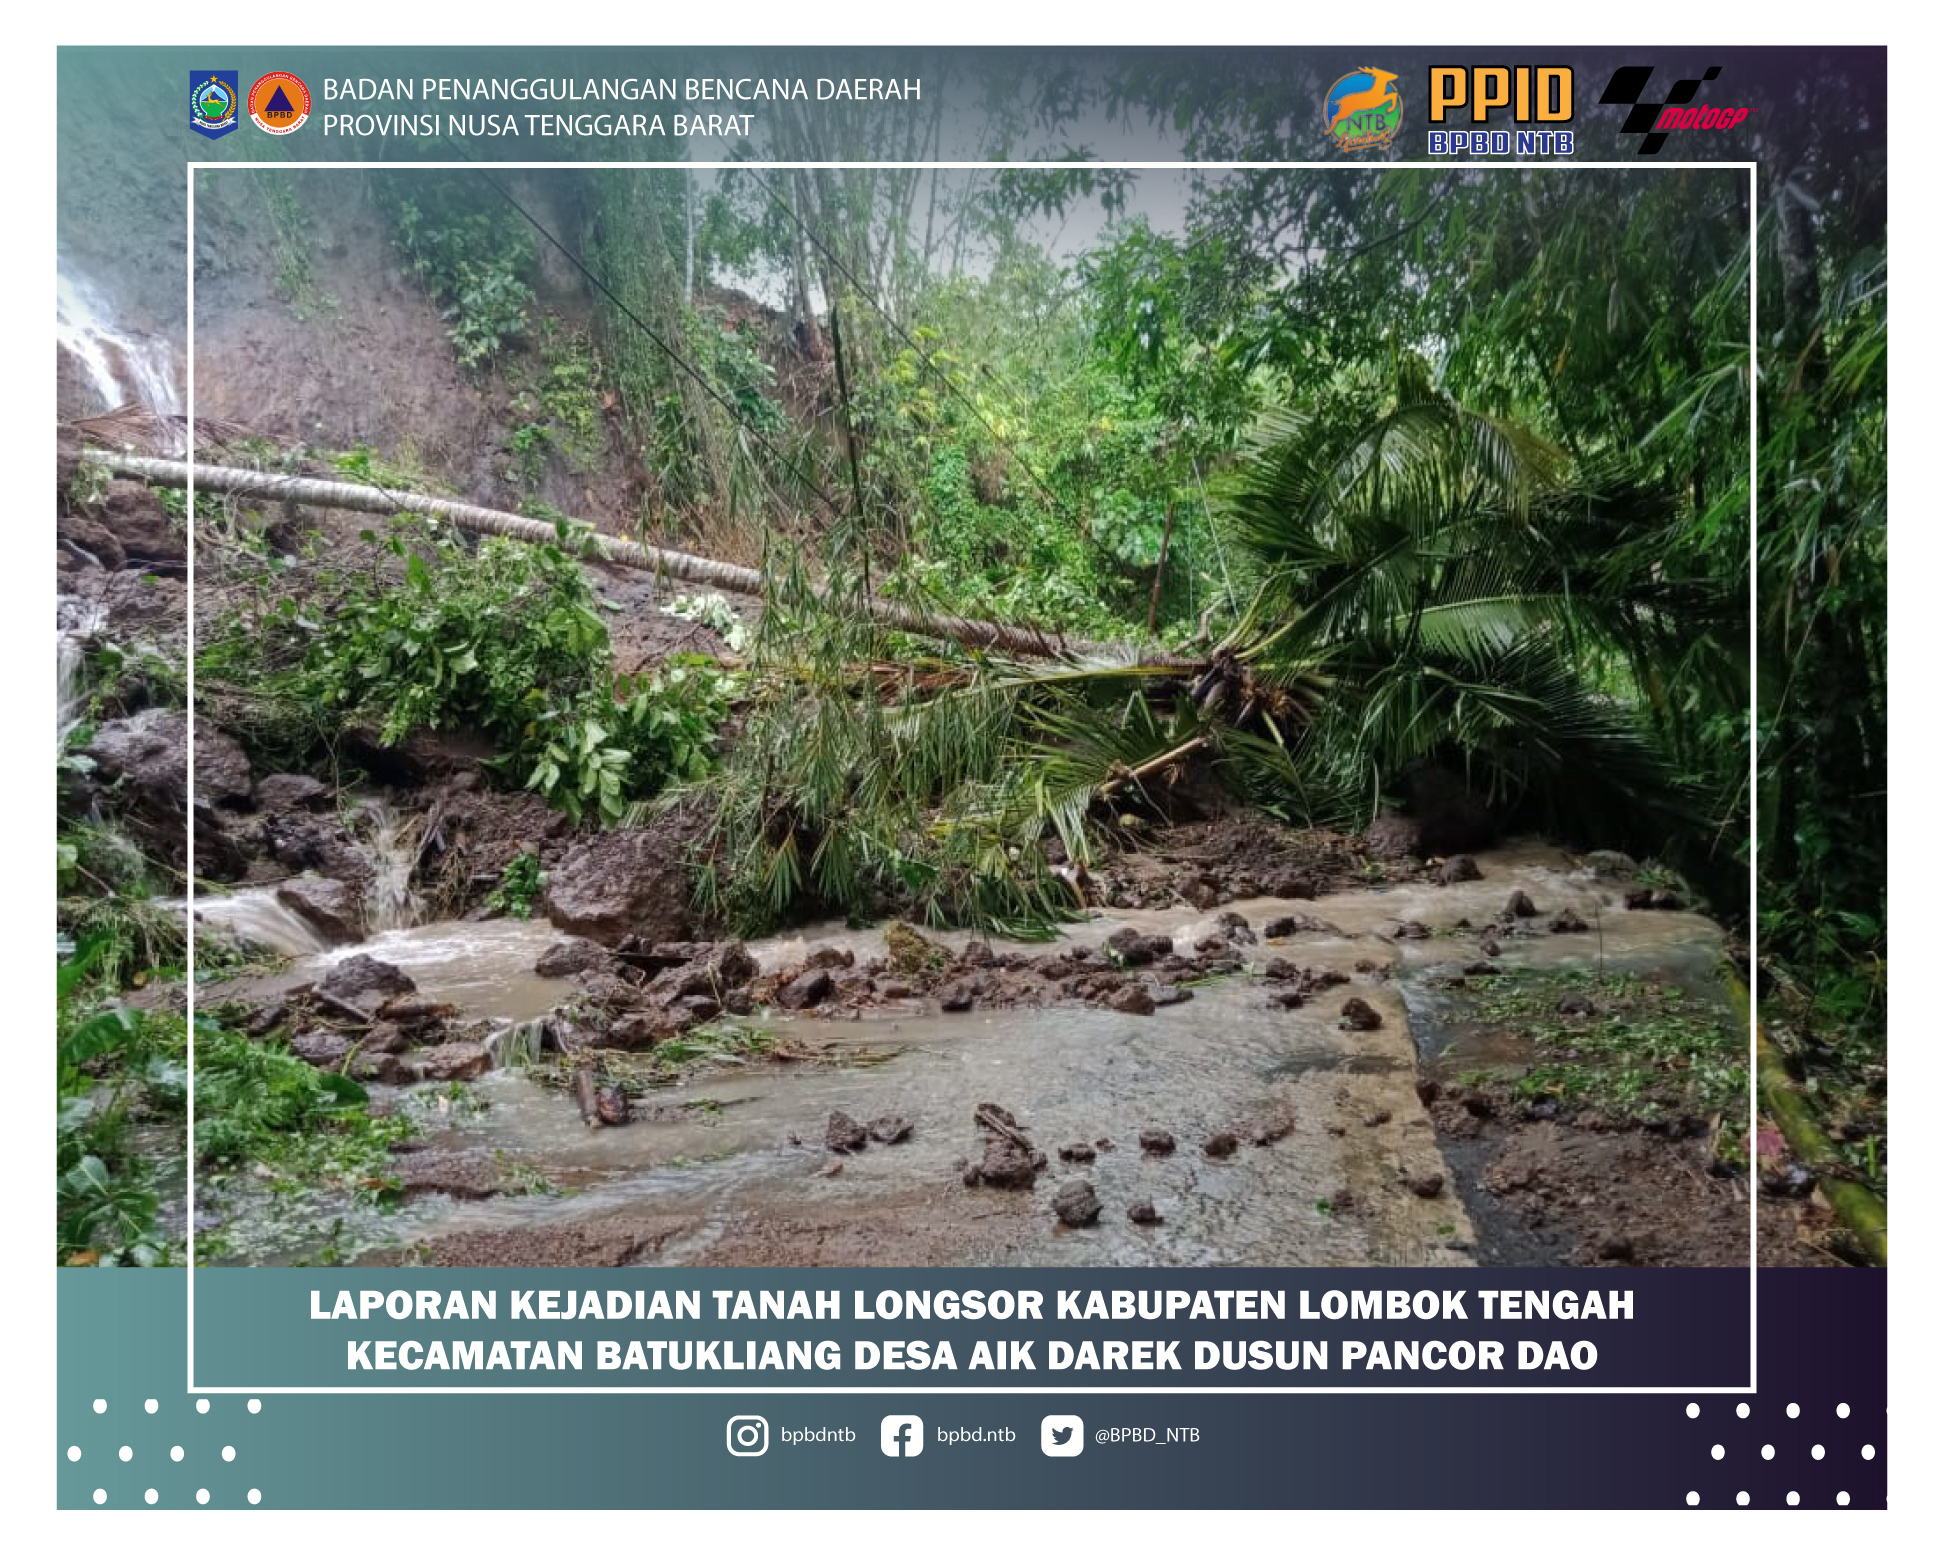 Laporan Kejadian Longsor Kabupaten Lombok Tengah Kecamatan Batukliang Desa Aik Darek Dusun Pancor Dao